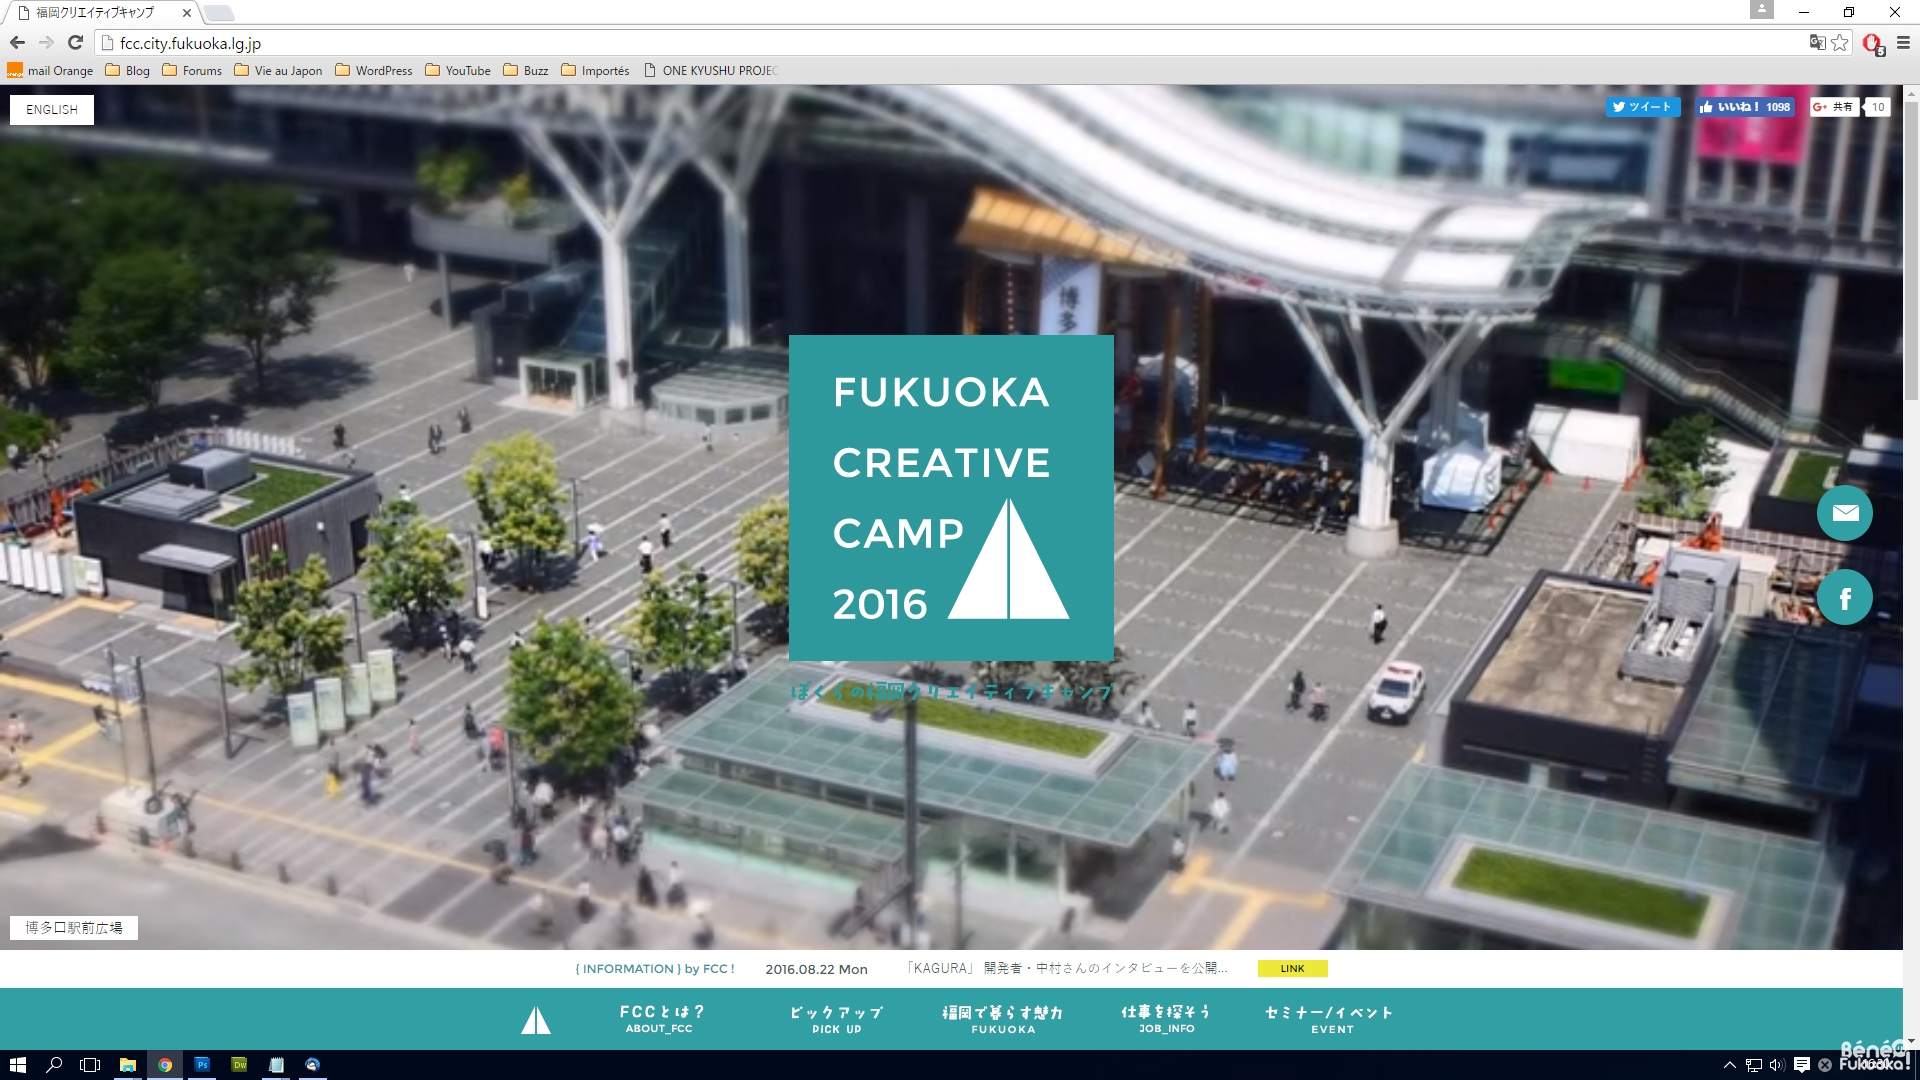 Fukuoka Creative Camp